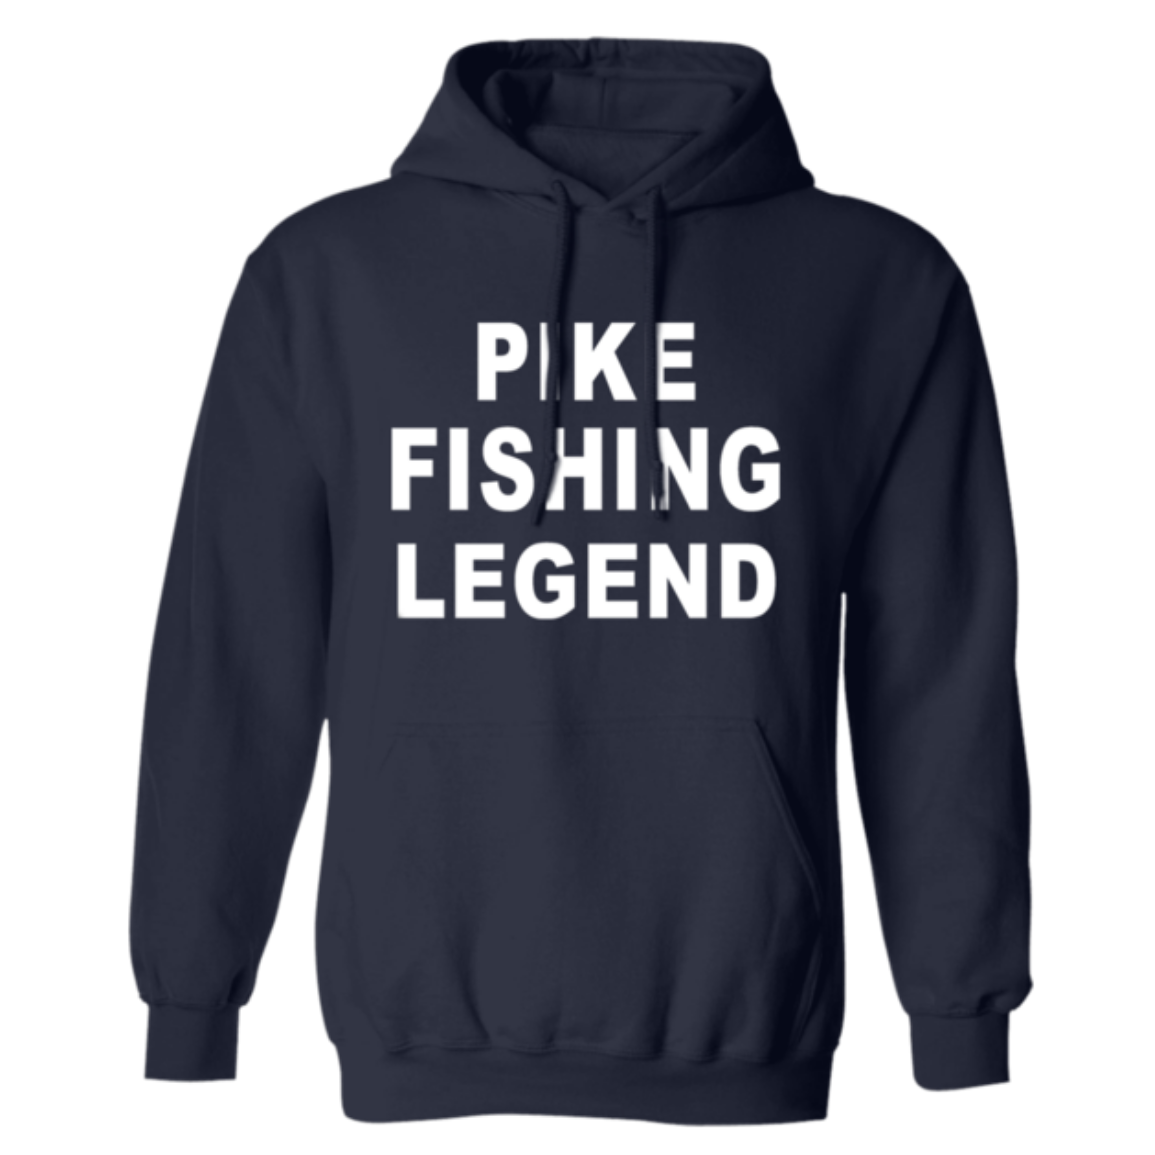 Pike fishing legend hoodie w navy